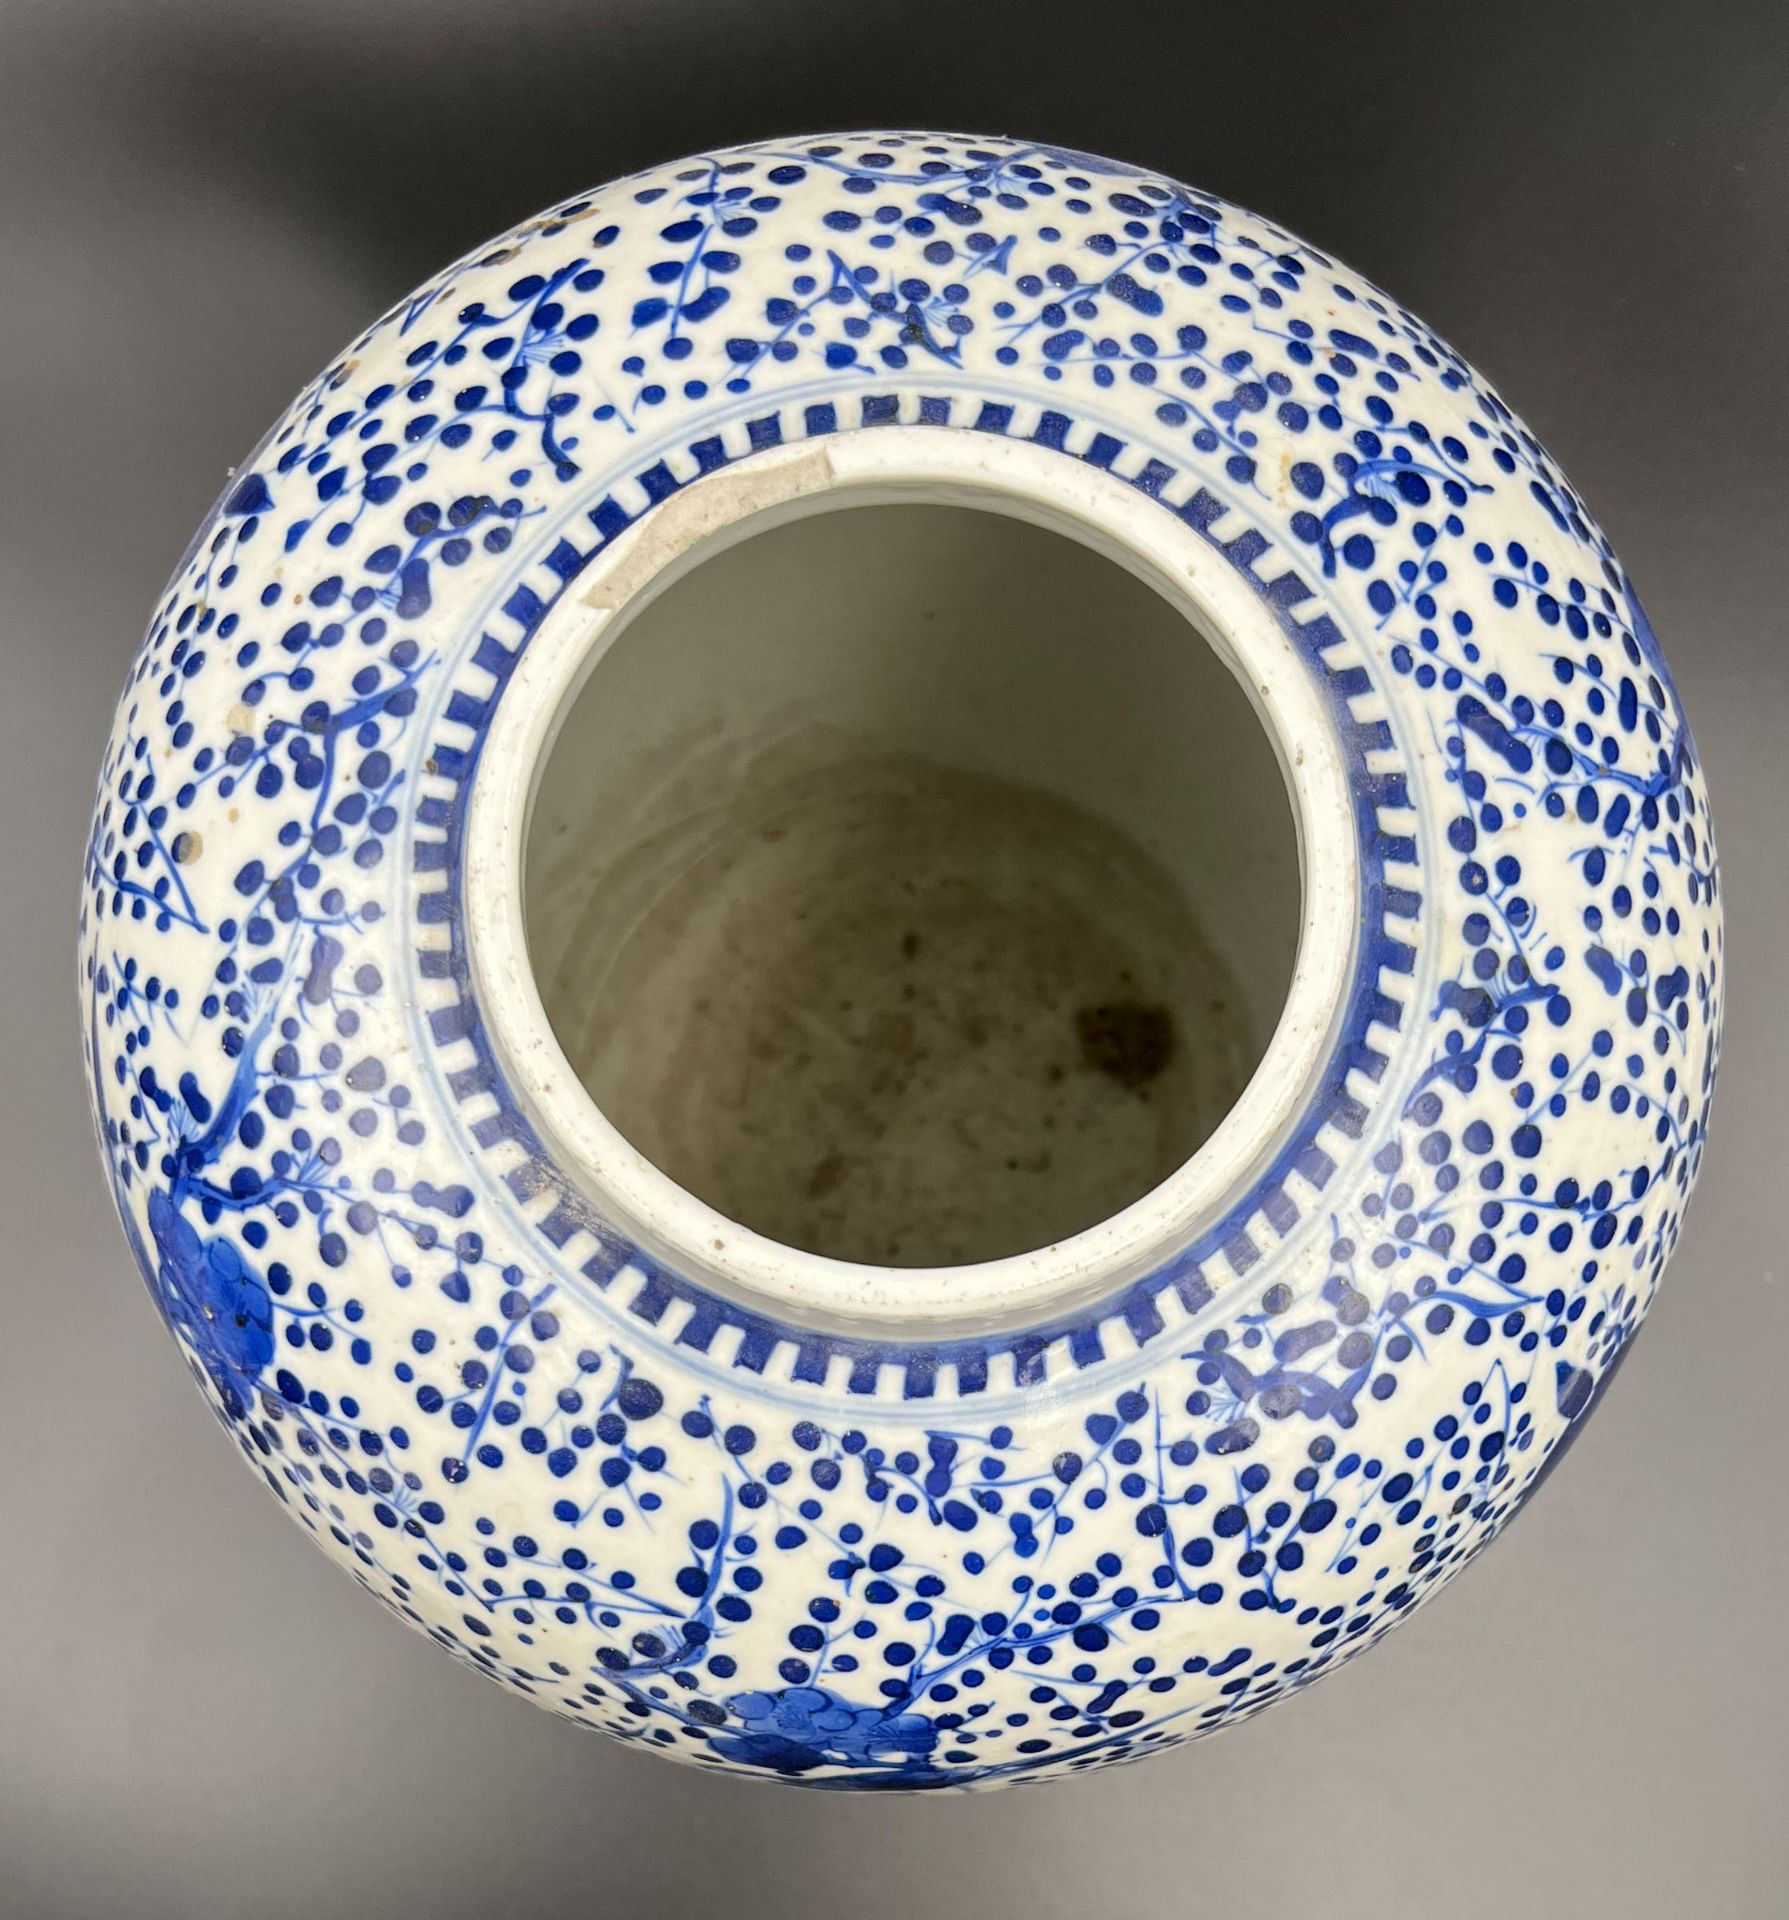 Blau-weiße Porzellan Vase mit He-He Er Xian Dekor. China. 19. Jahrhundert. - Bild 5 aus 12